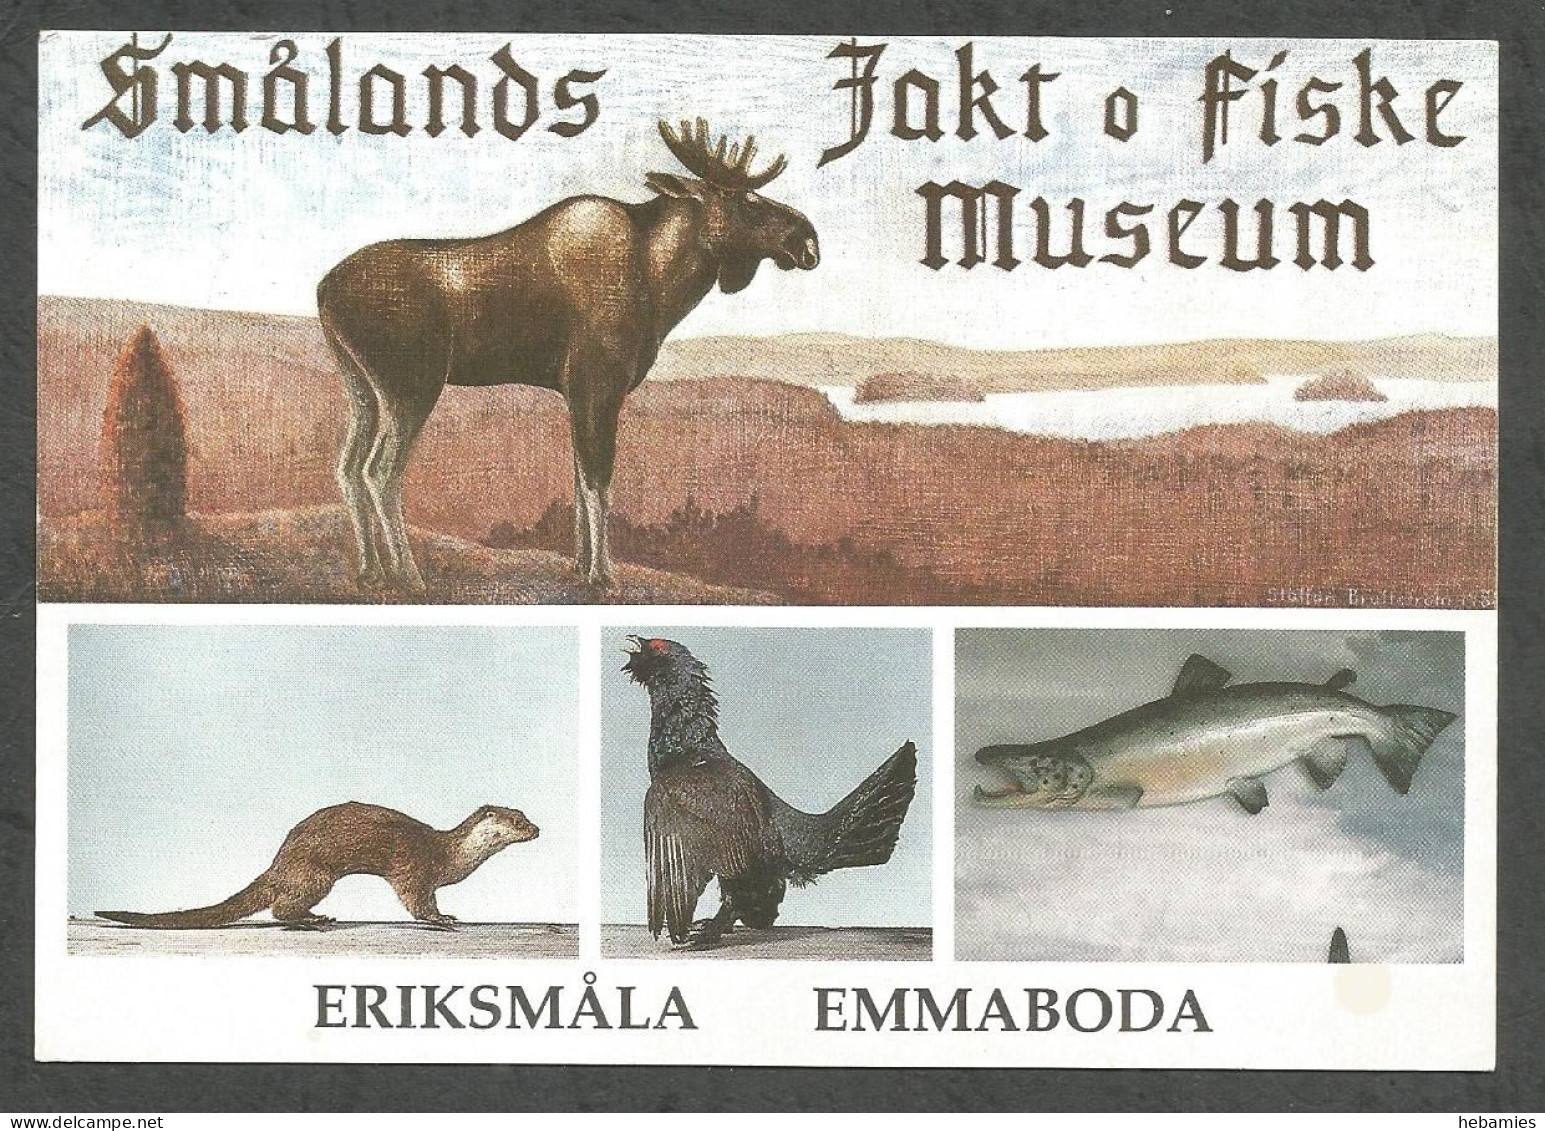 SMÅLANDS JAKT Och FISKE MUSEUM - ERIKSMÅLA - EMMABODA - SWEDEN - SVERIGE - - Sweden